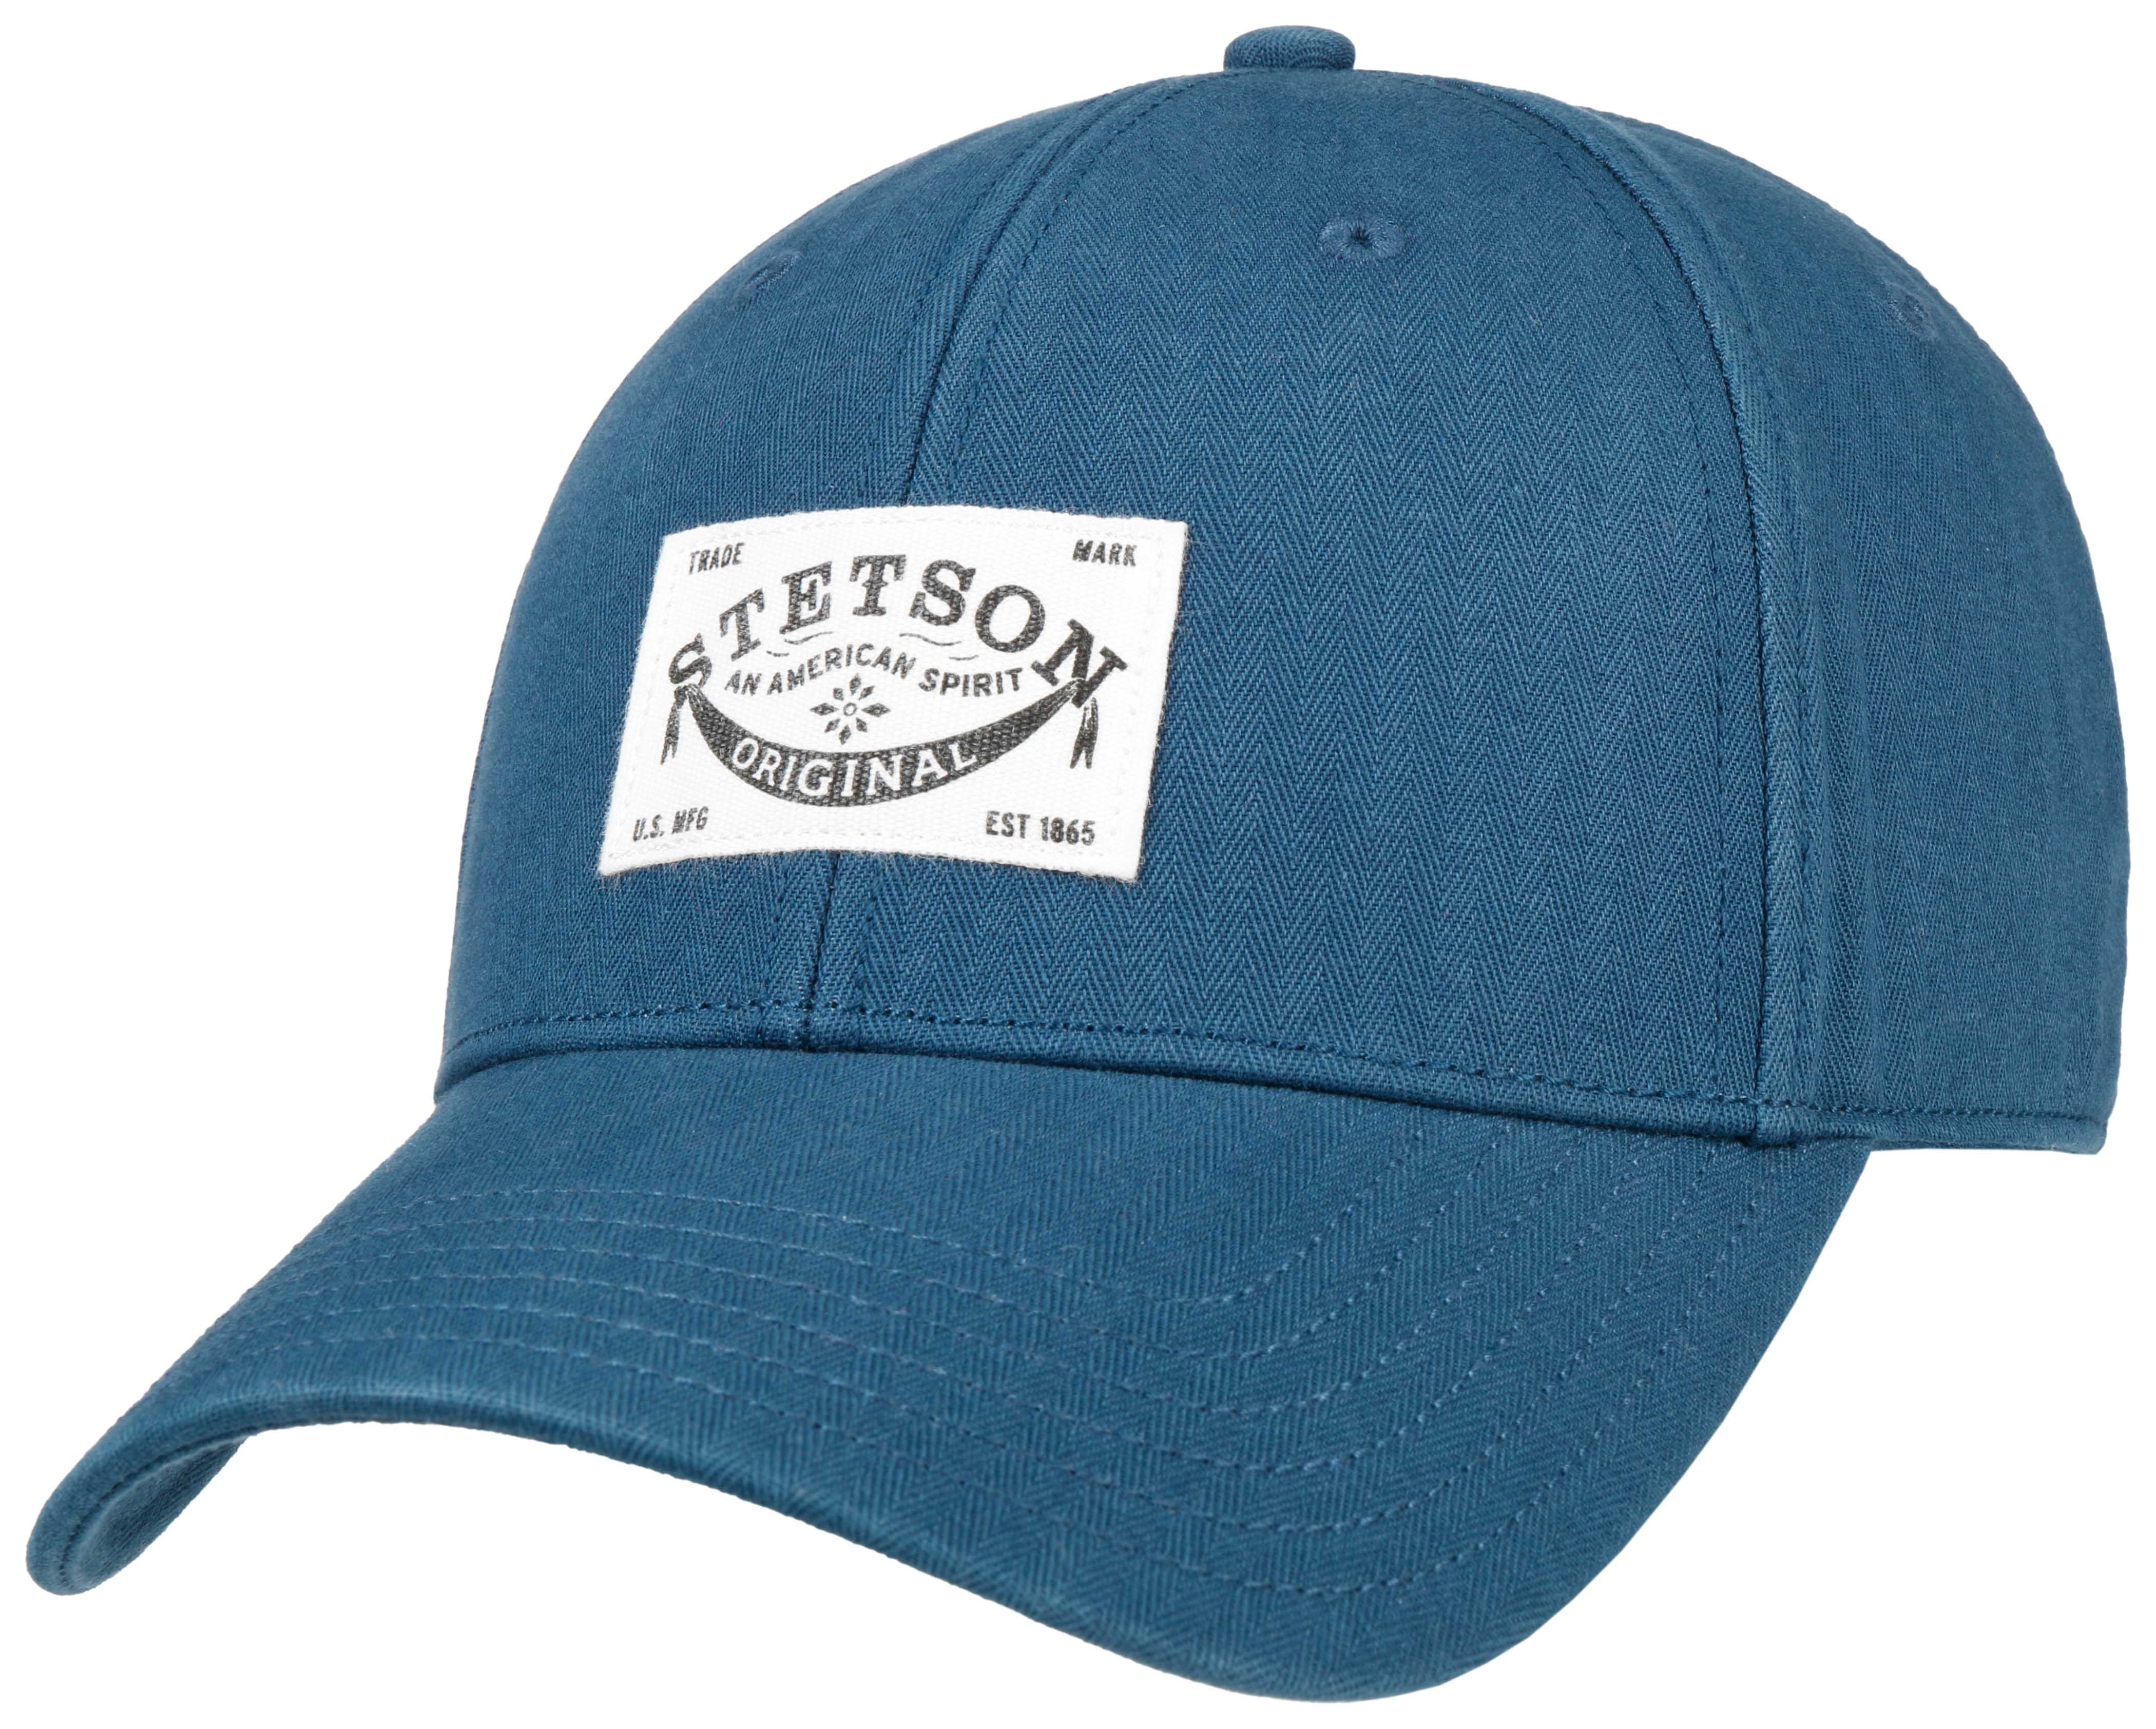 Stetson Classic Baumwollcap mit UV-Schutz